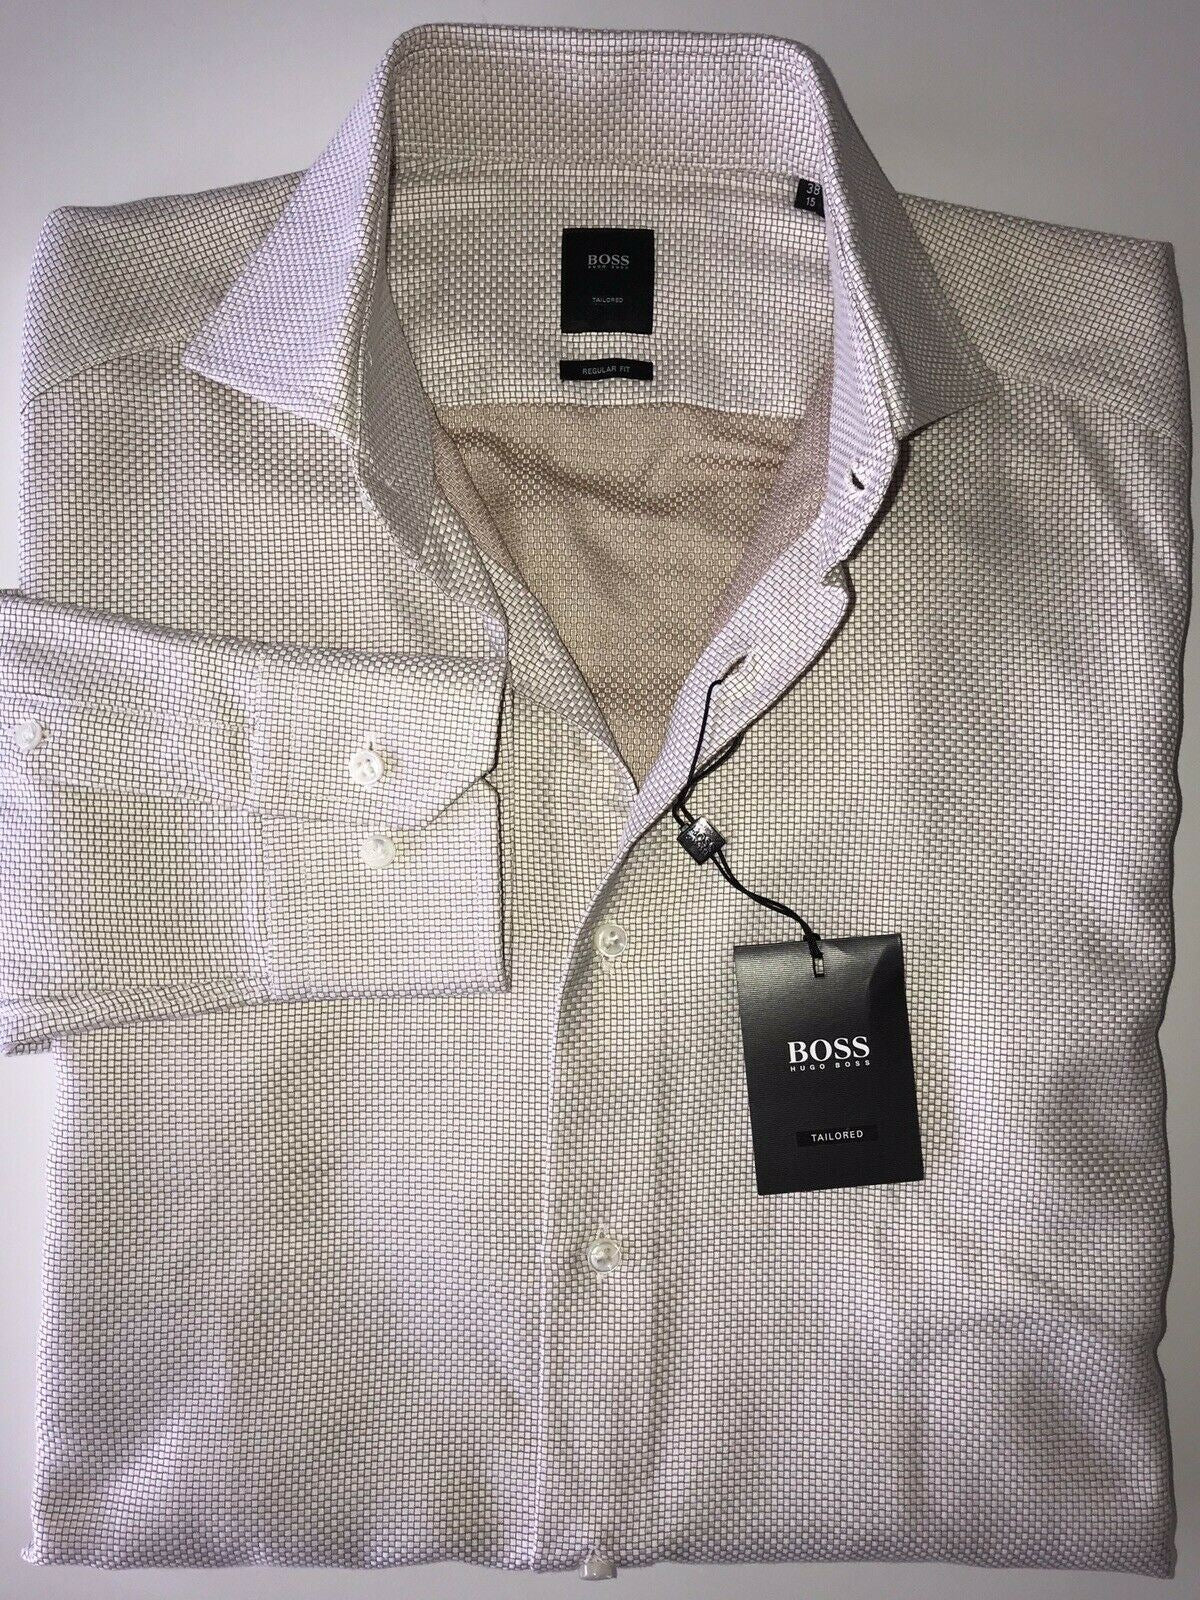 NWT $255 Hugo Boss Mens Tailored Regular Fit Cotton Beige Dress Shirt Size 38/15